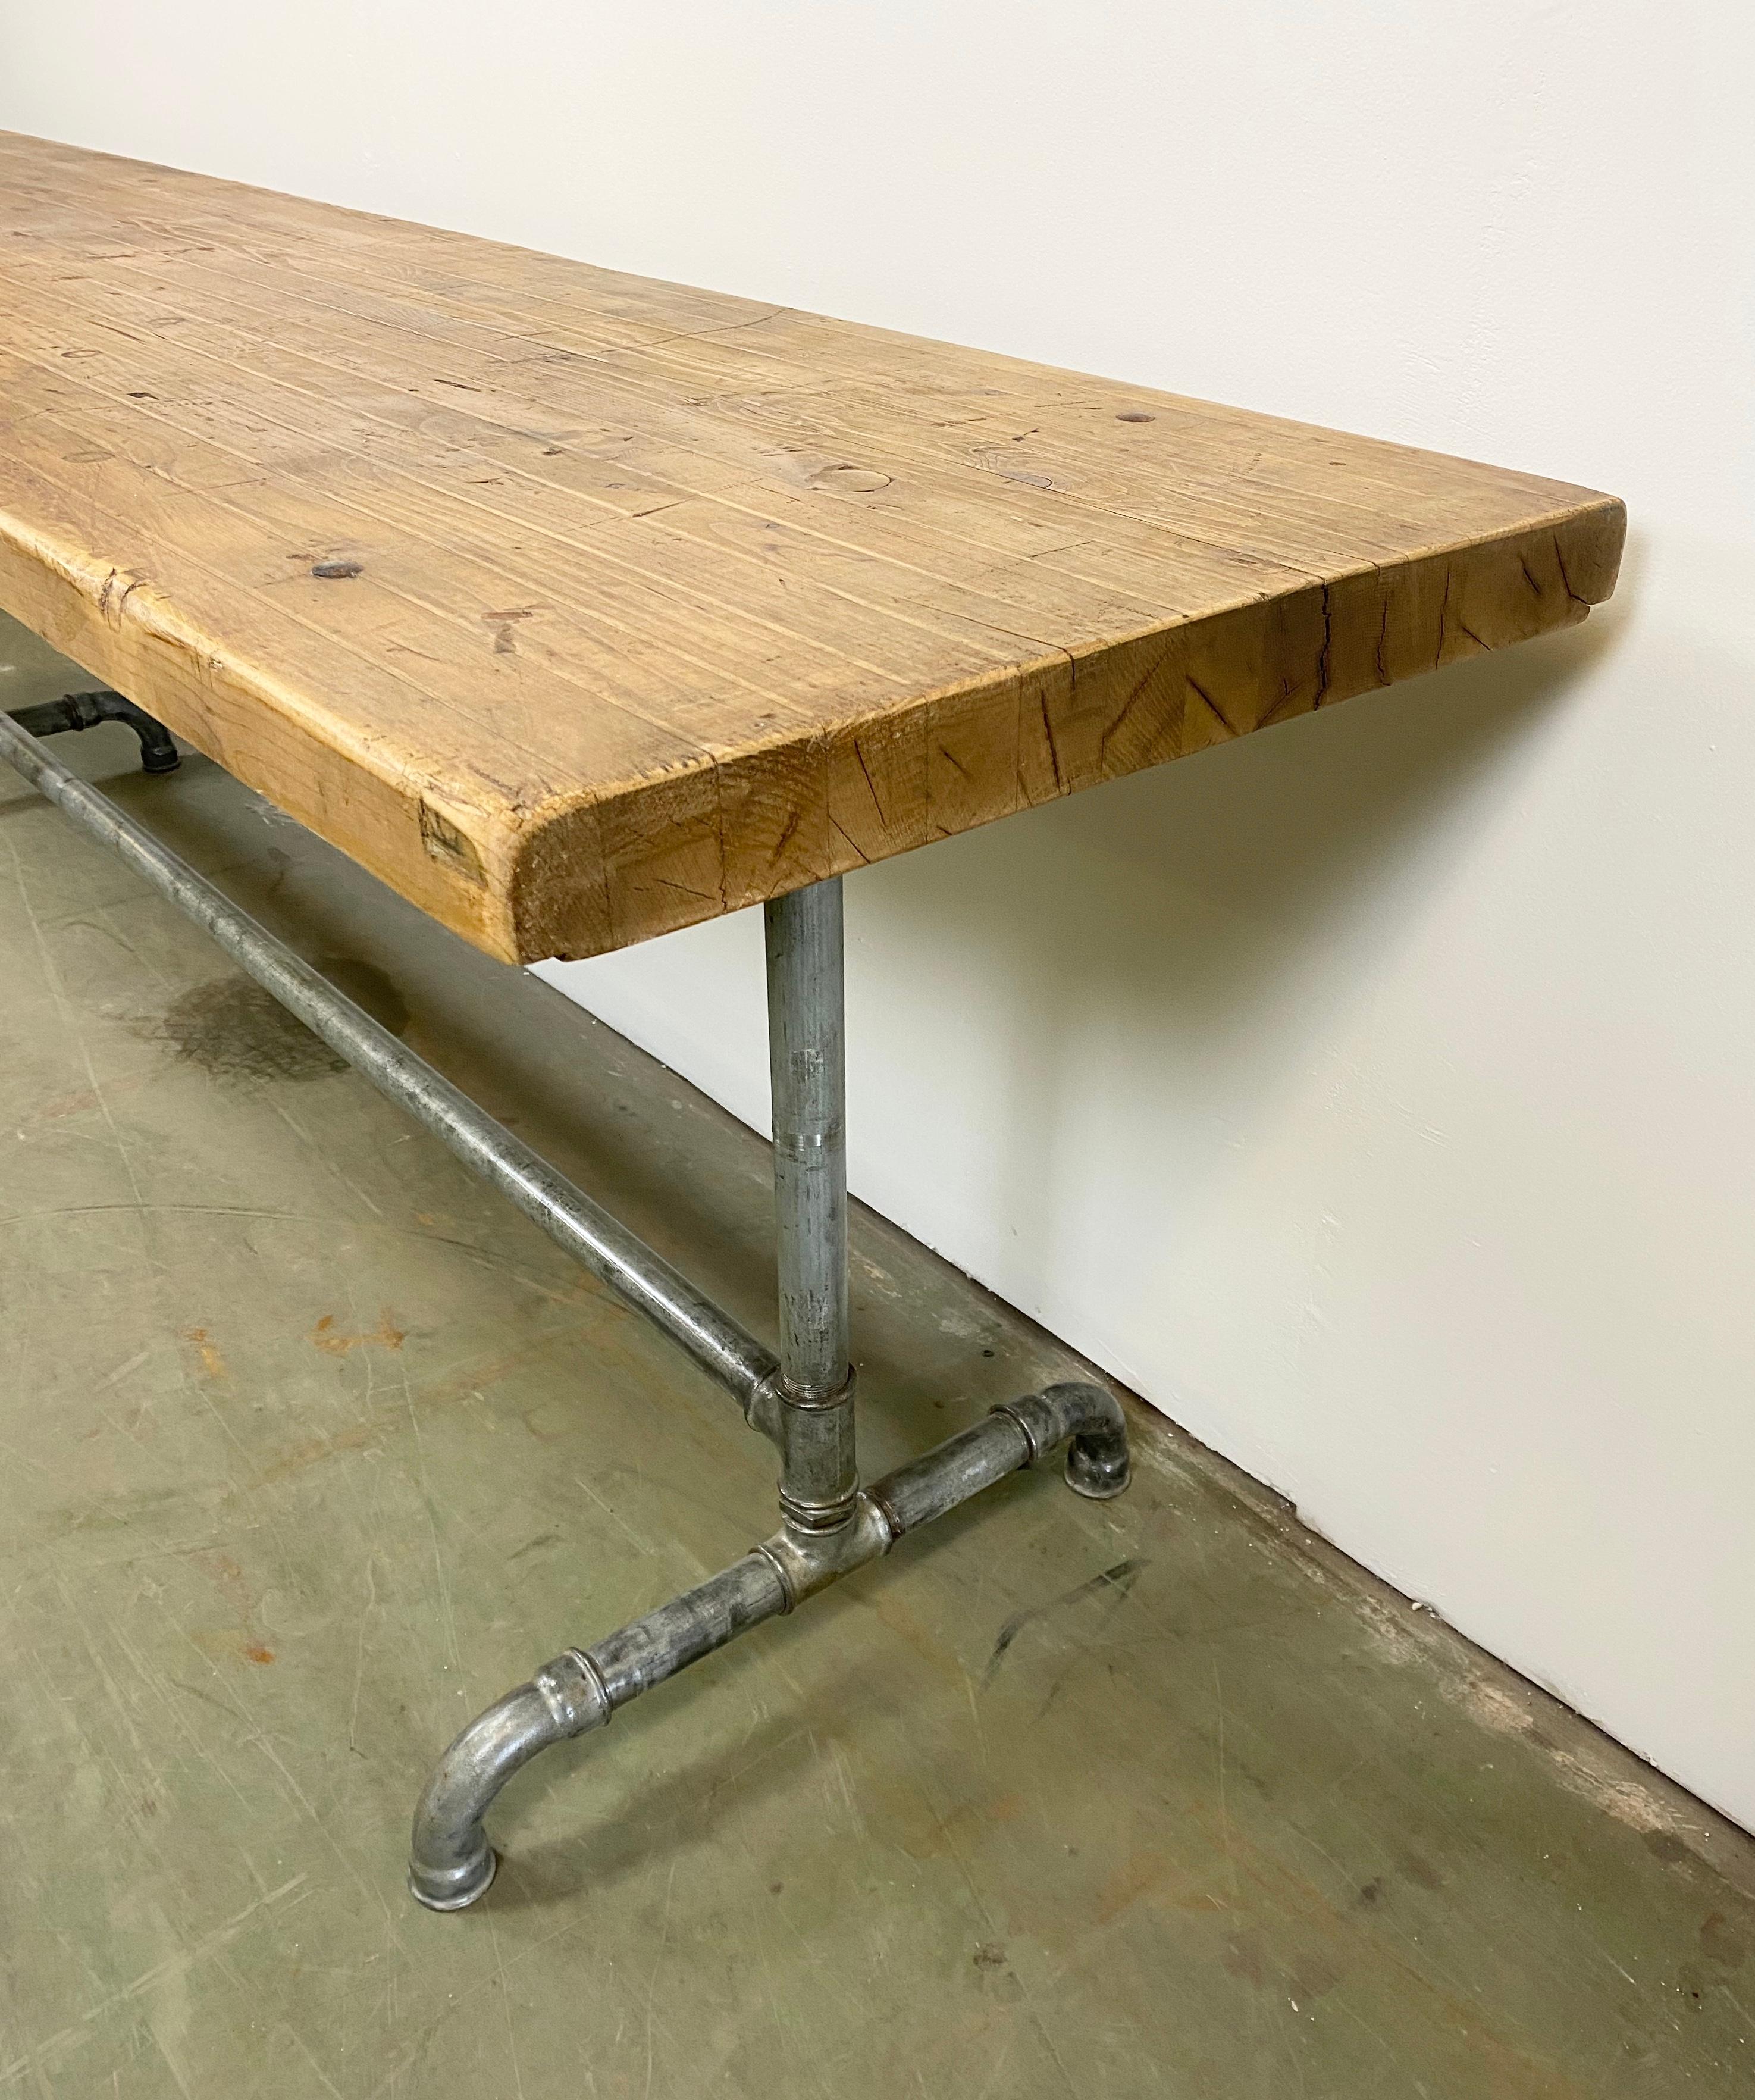 Industrieller Esstisch aus den 1960er Jahren. Die Konstruktion besteht aus Eisenrohren und einer massiven Holzplatte. Das Gewicht des Tisches beträgt 60 kg.